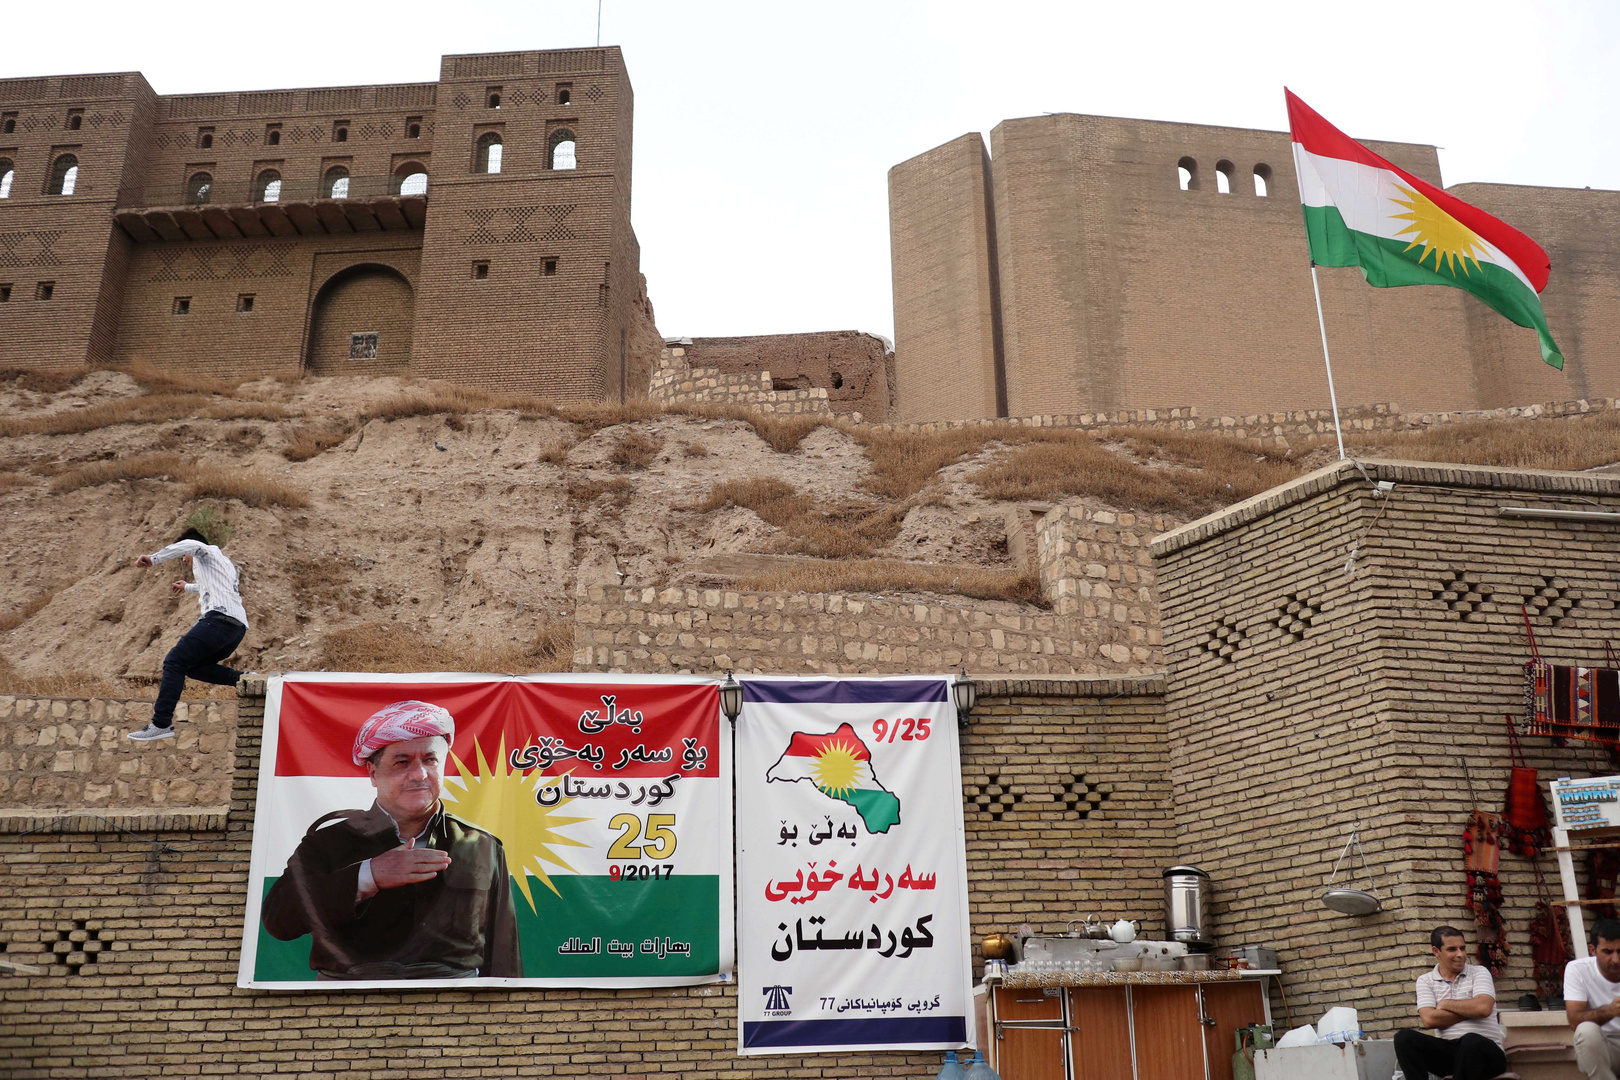 حكومة كردستان العراق تشن هجوما حادا على نصرالله